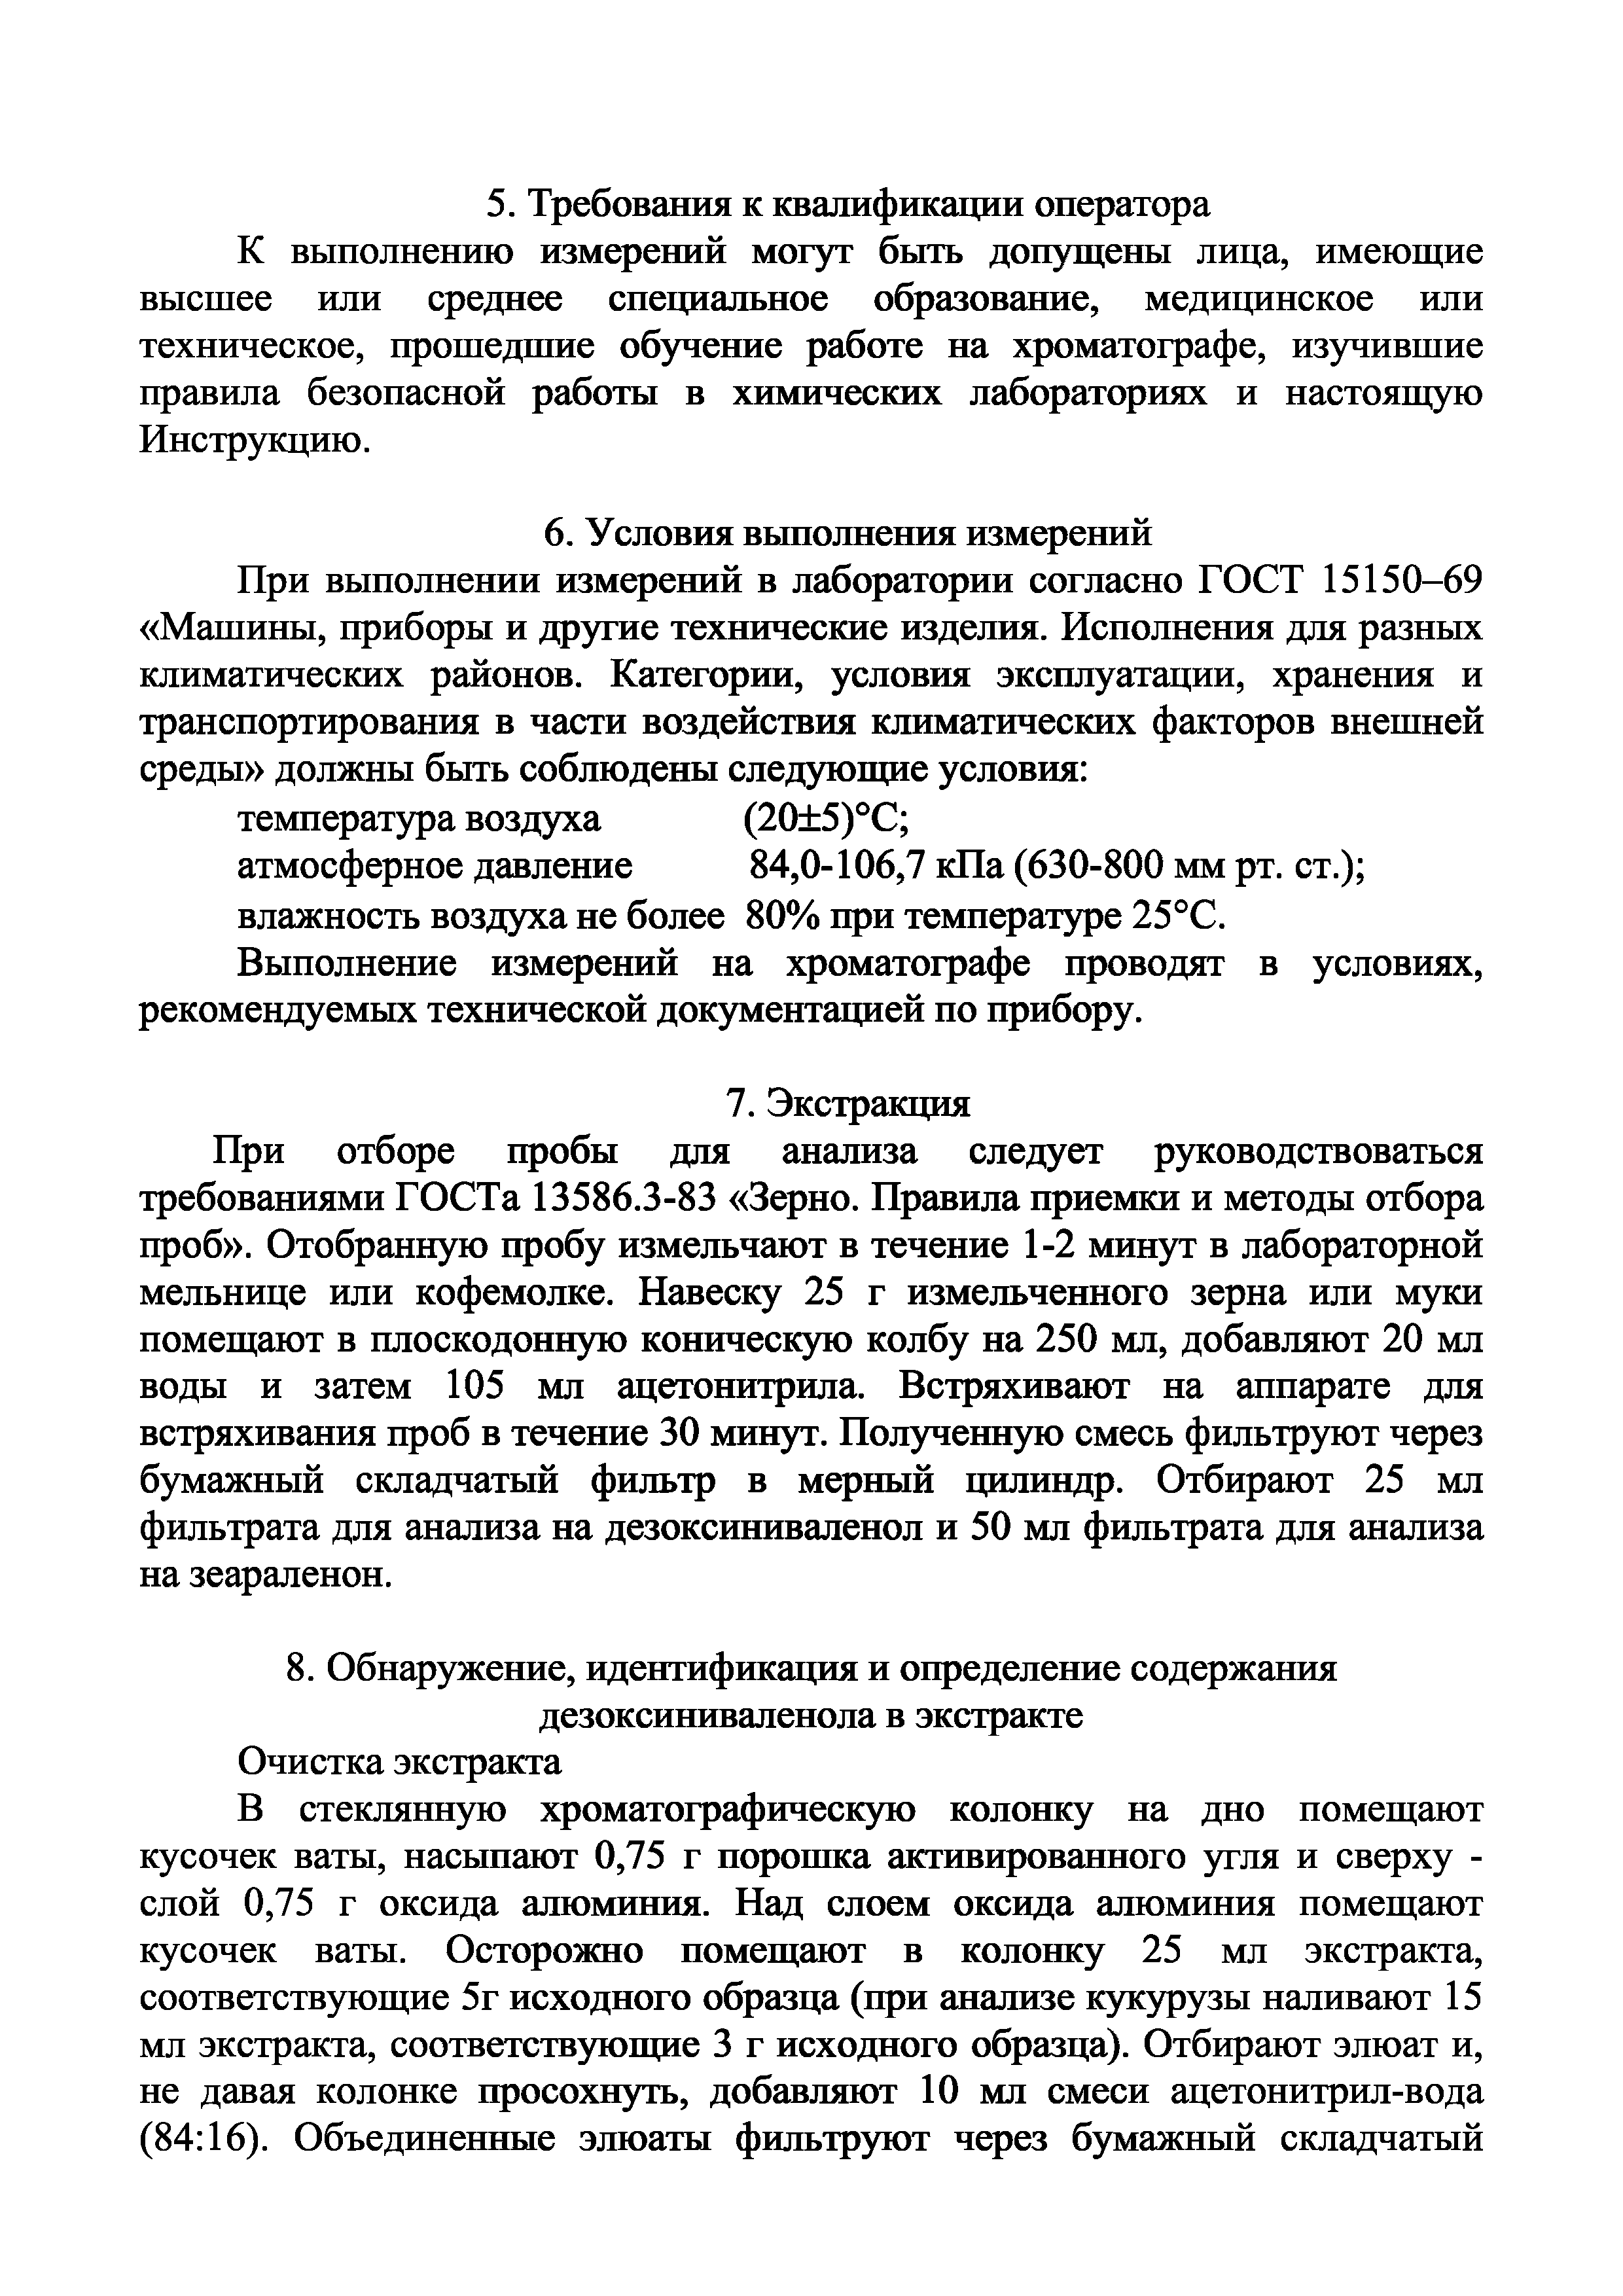 Инструкция 4.1.10-15-61-2005